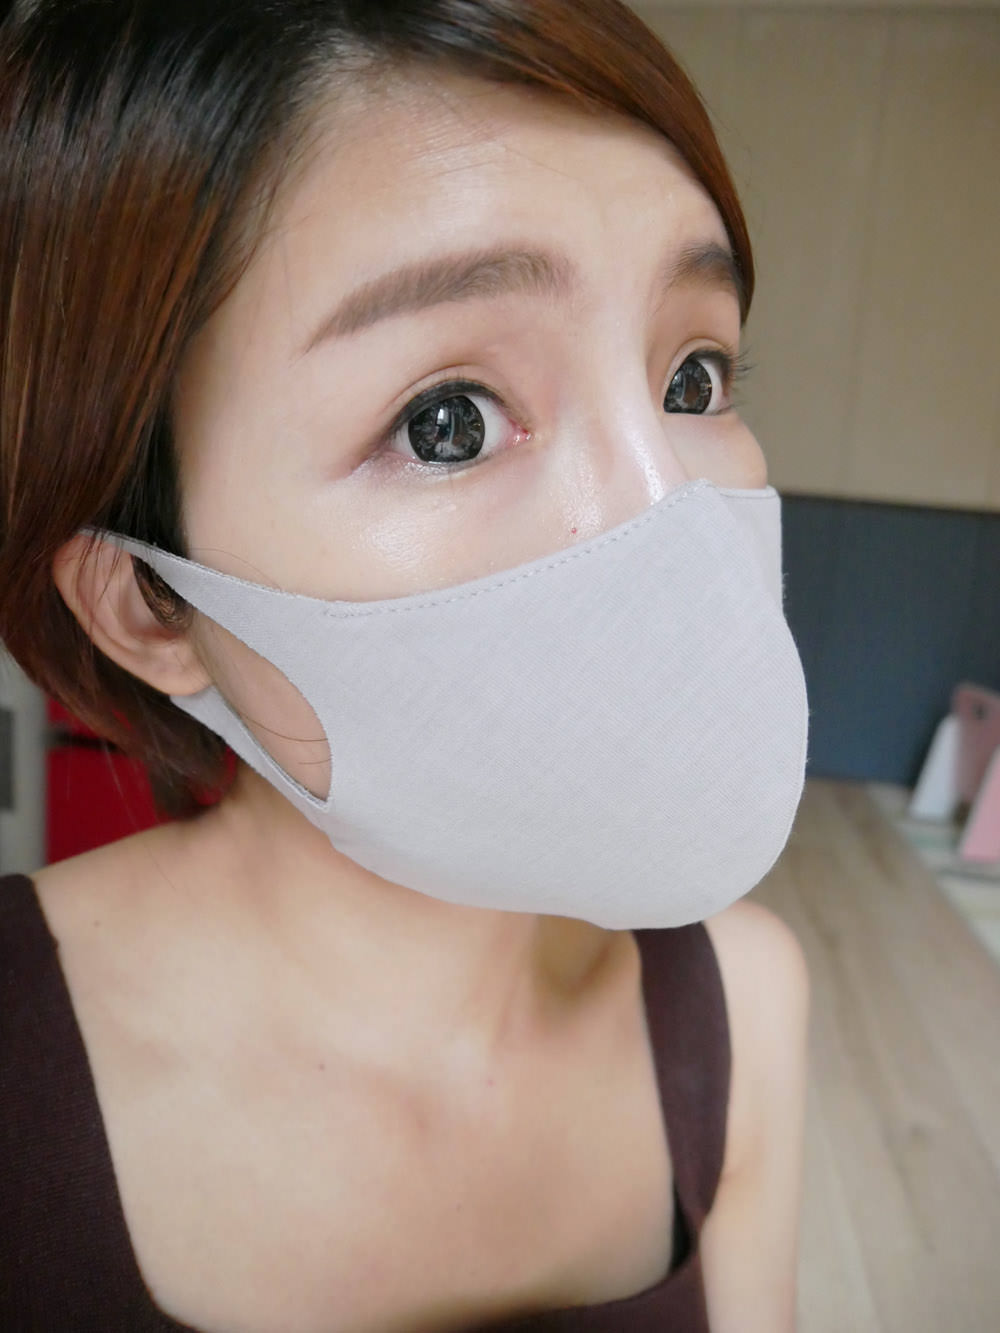 [好物] ESCURA多機能防霾美顏口罩外出必備!預防髒空汙對抗PM2.5還要很時尚